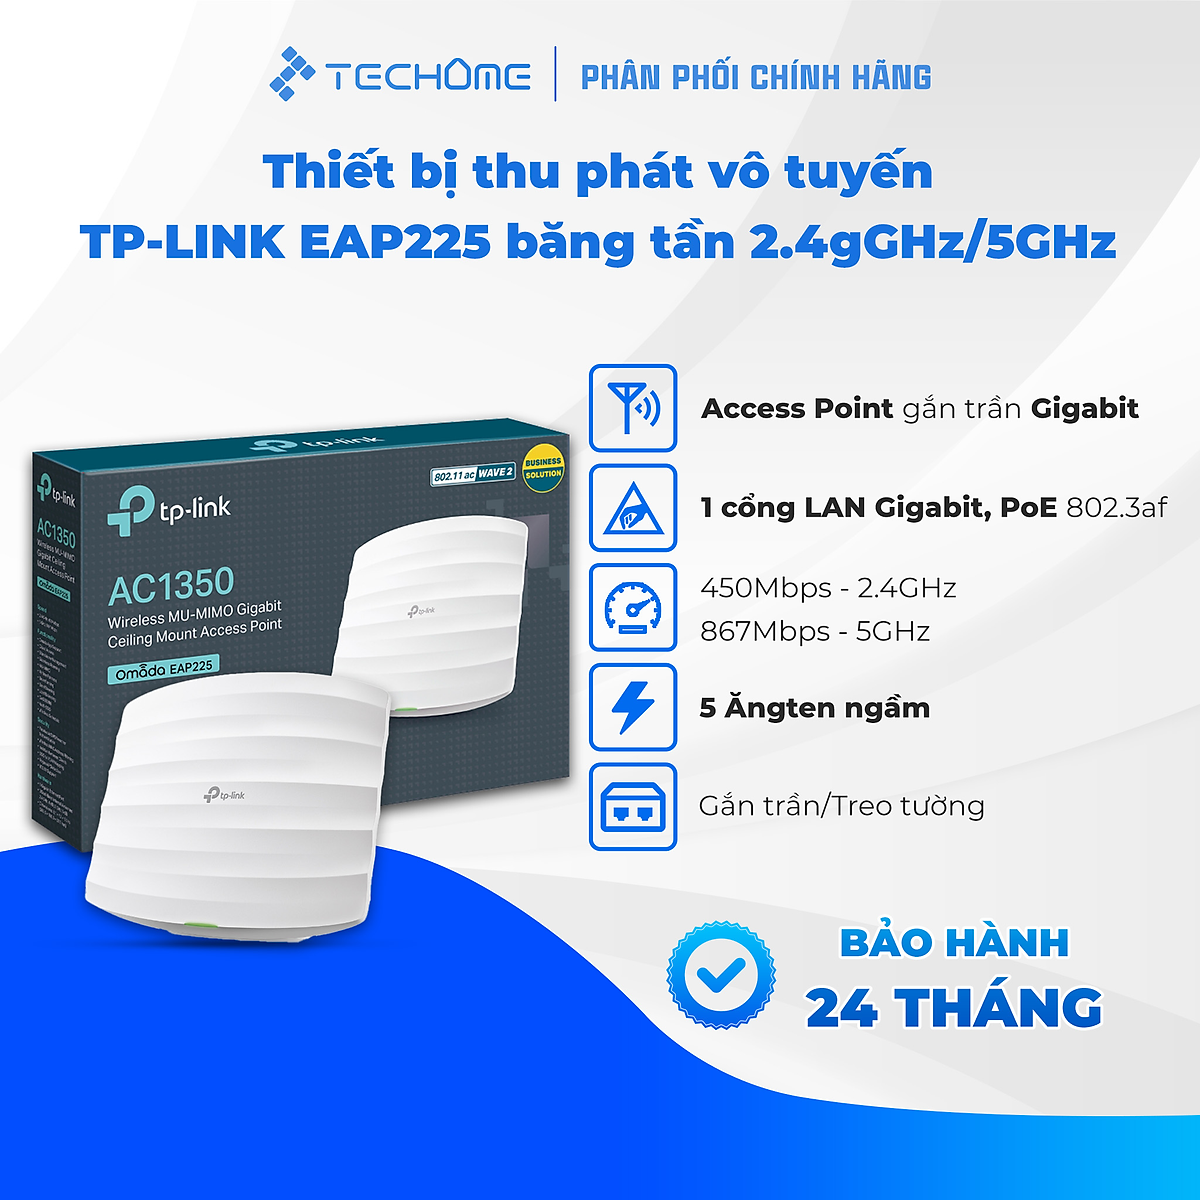 Thiết bị thu phát vô tuyến TP-LINK EAP225 băng tần 2.4GHz / 5GHz ...